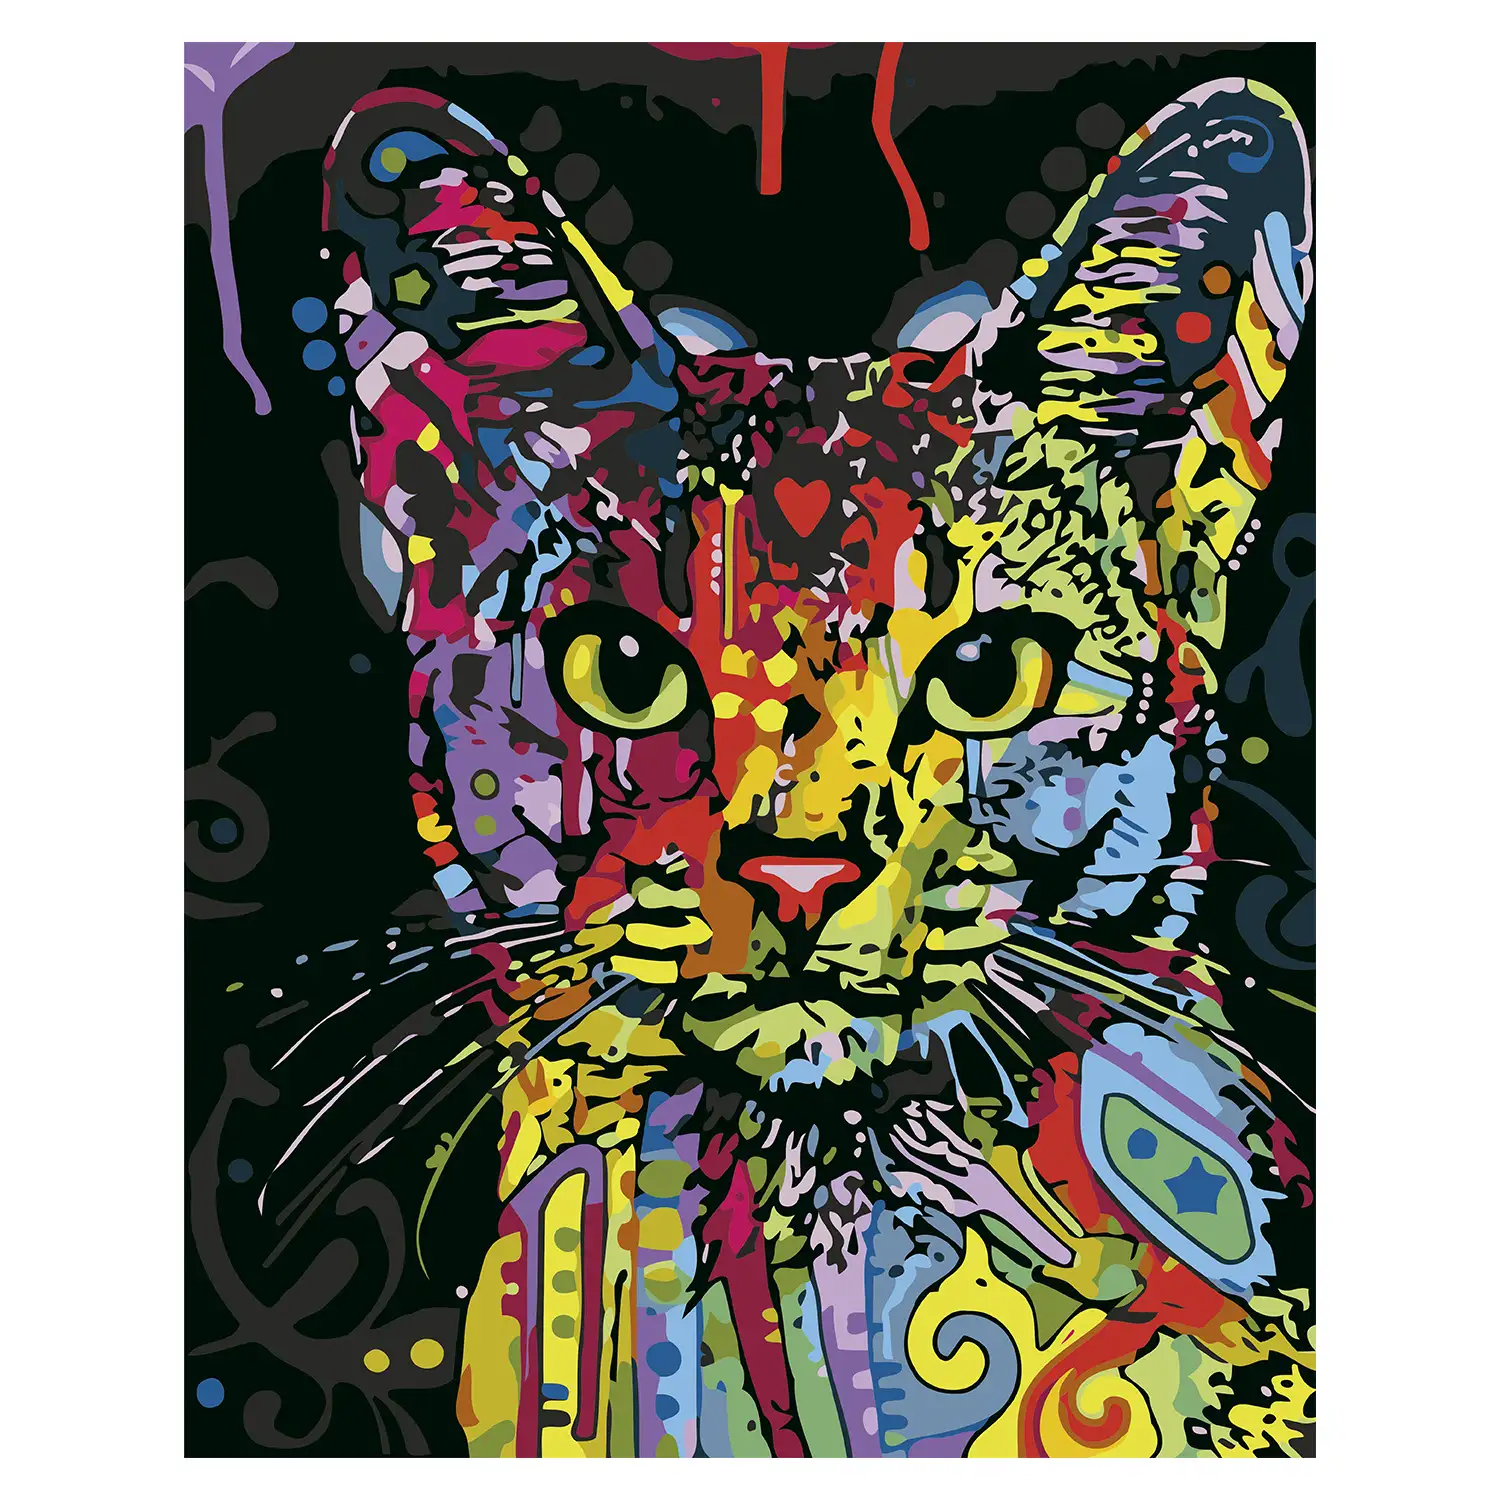 Lienzo con dibujo para pintar con números, de 40x50cm. Diseño gato abstracto. Incluye pinceles y pinturas necesarias.